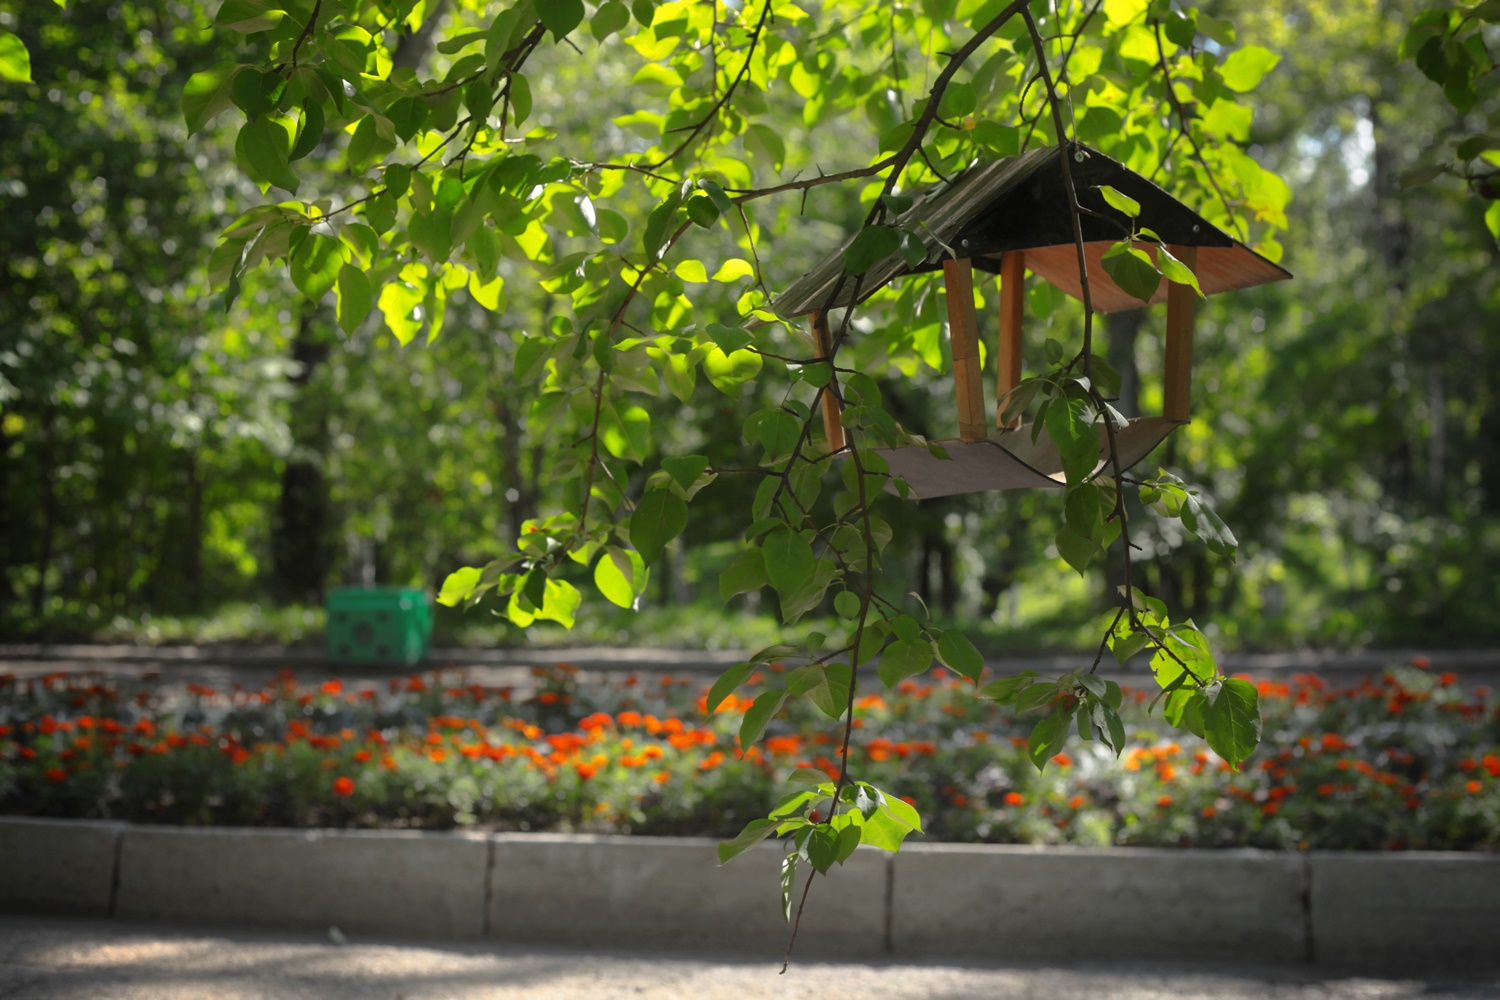 Парк Парижской коммуны в Иркутске в этом году благоустроят. А вот так он выглядит сейчас